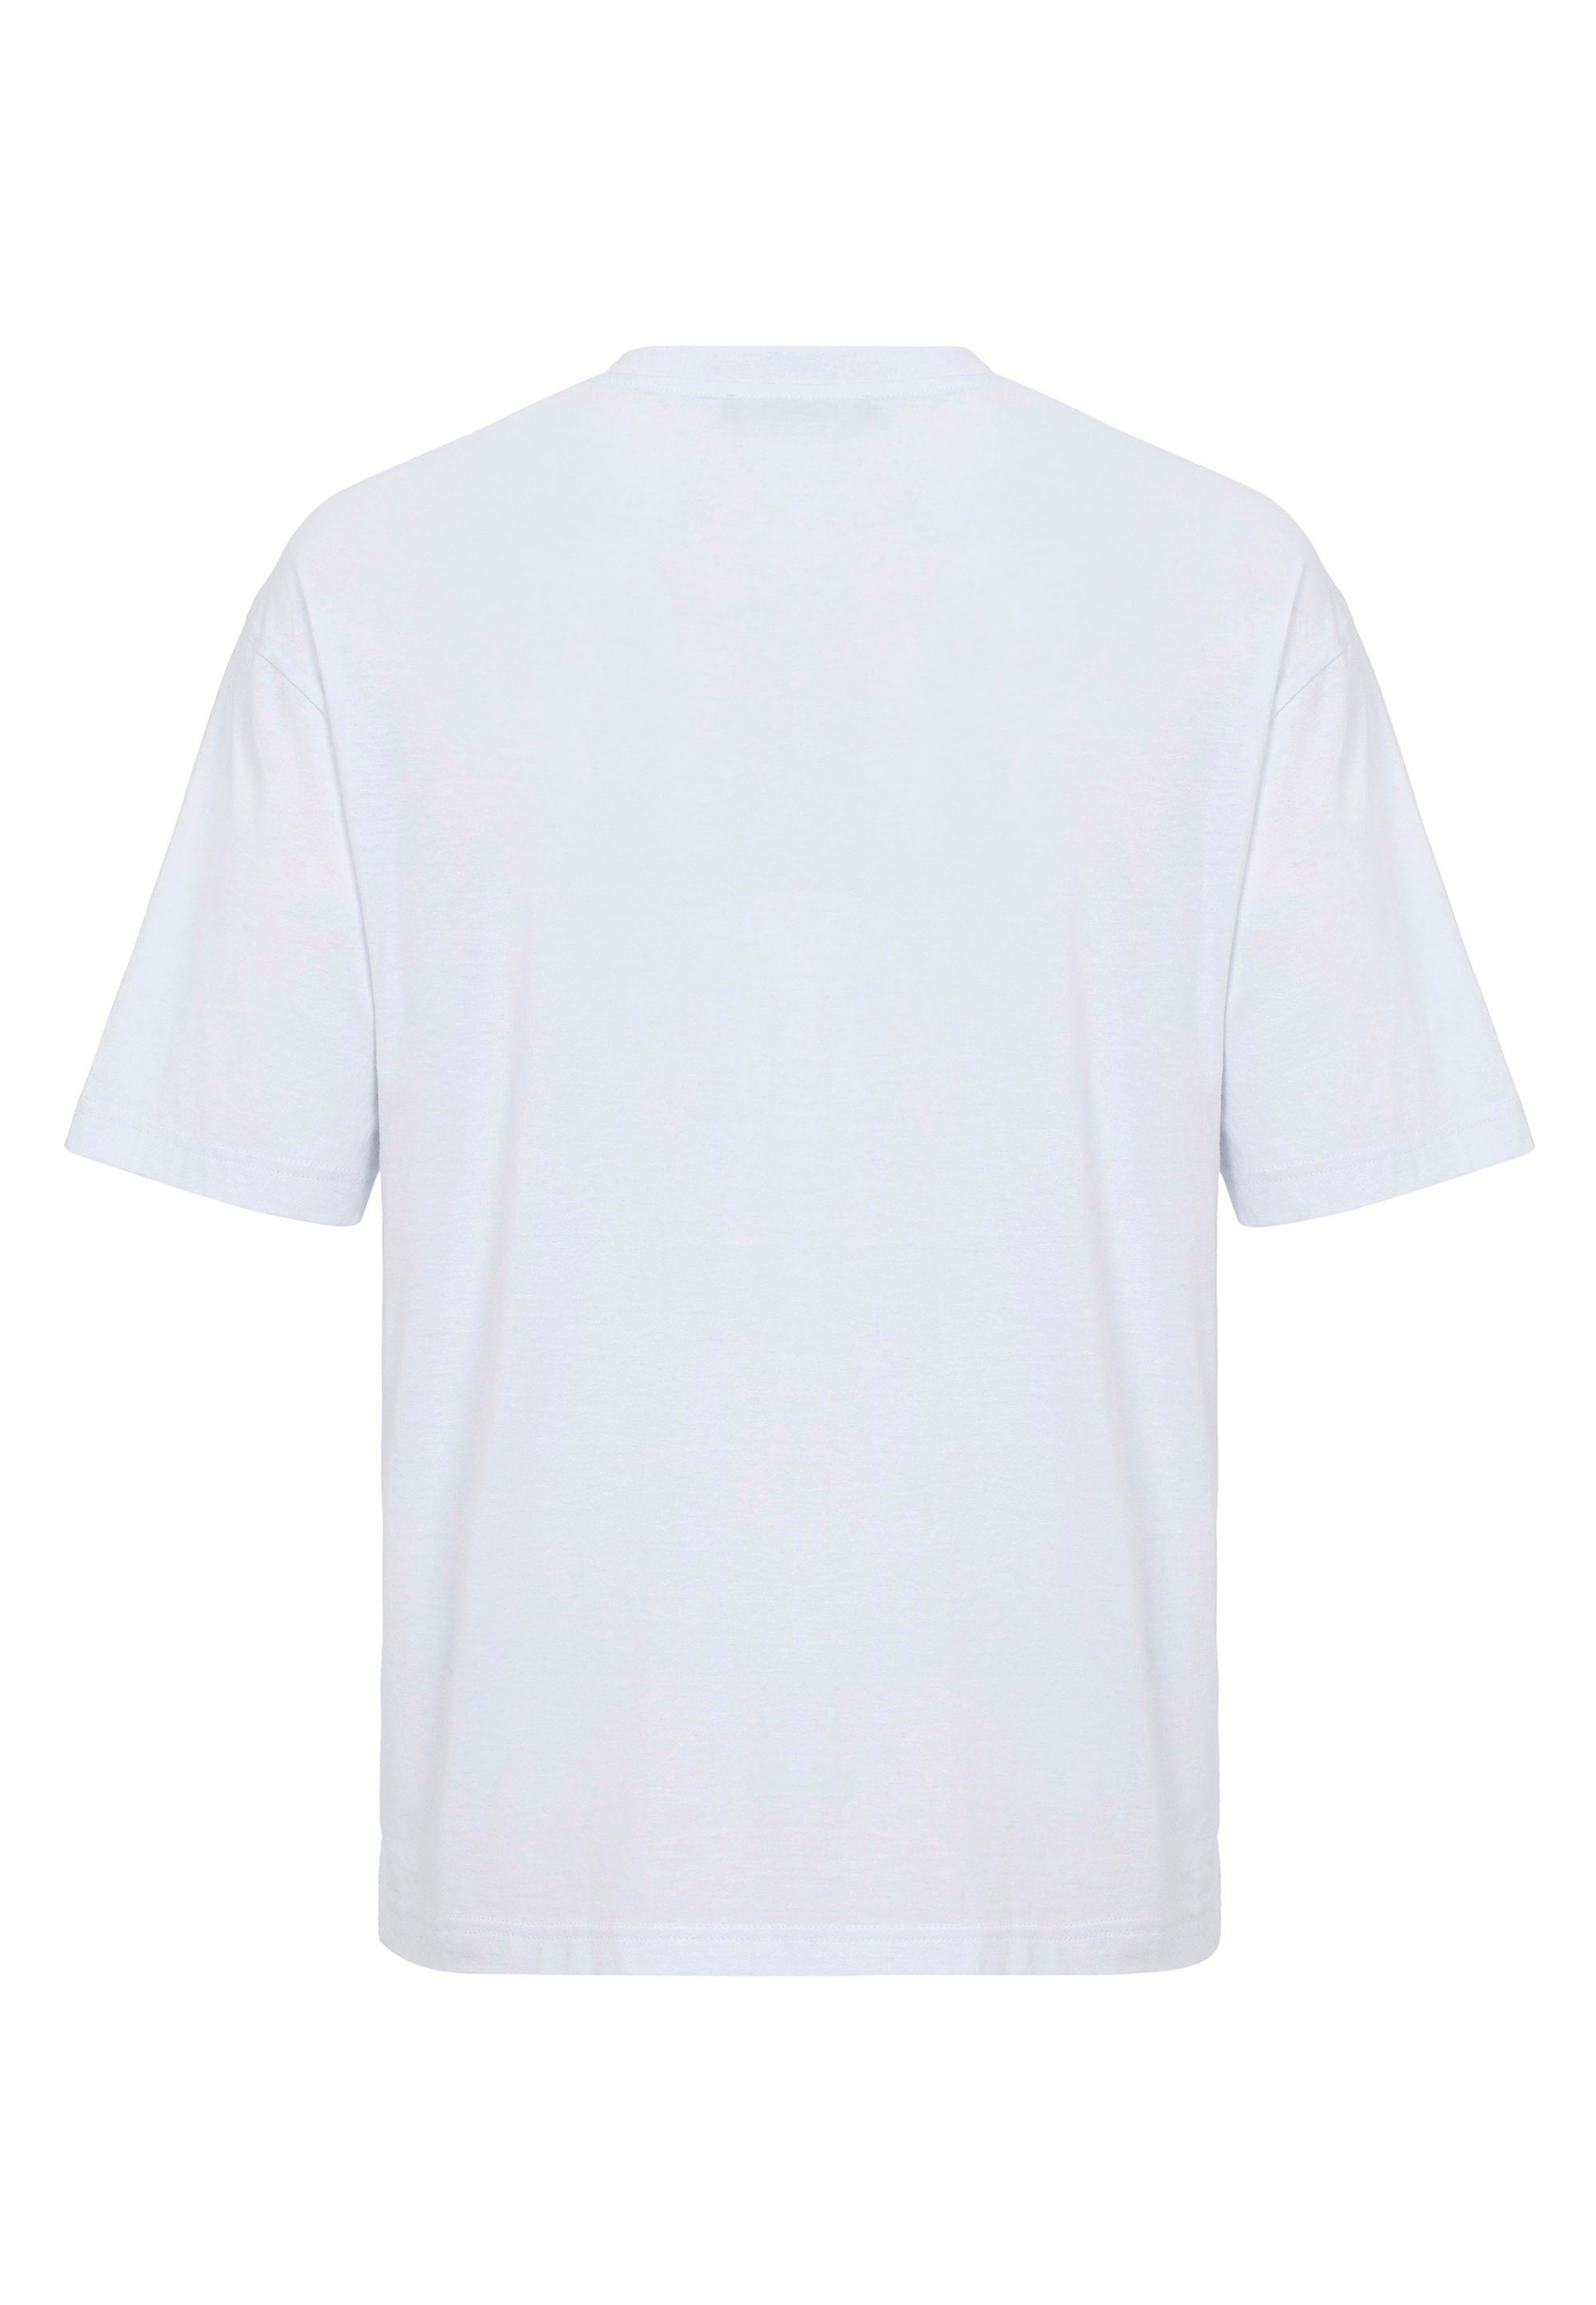 RedBridge T-Shirt Pasadena mit NASA-Aufdruck weiß modischem